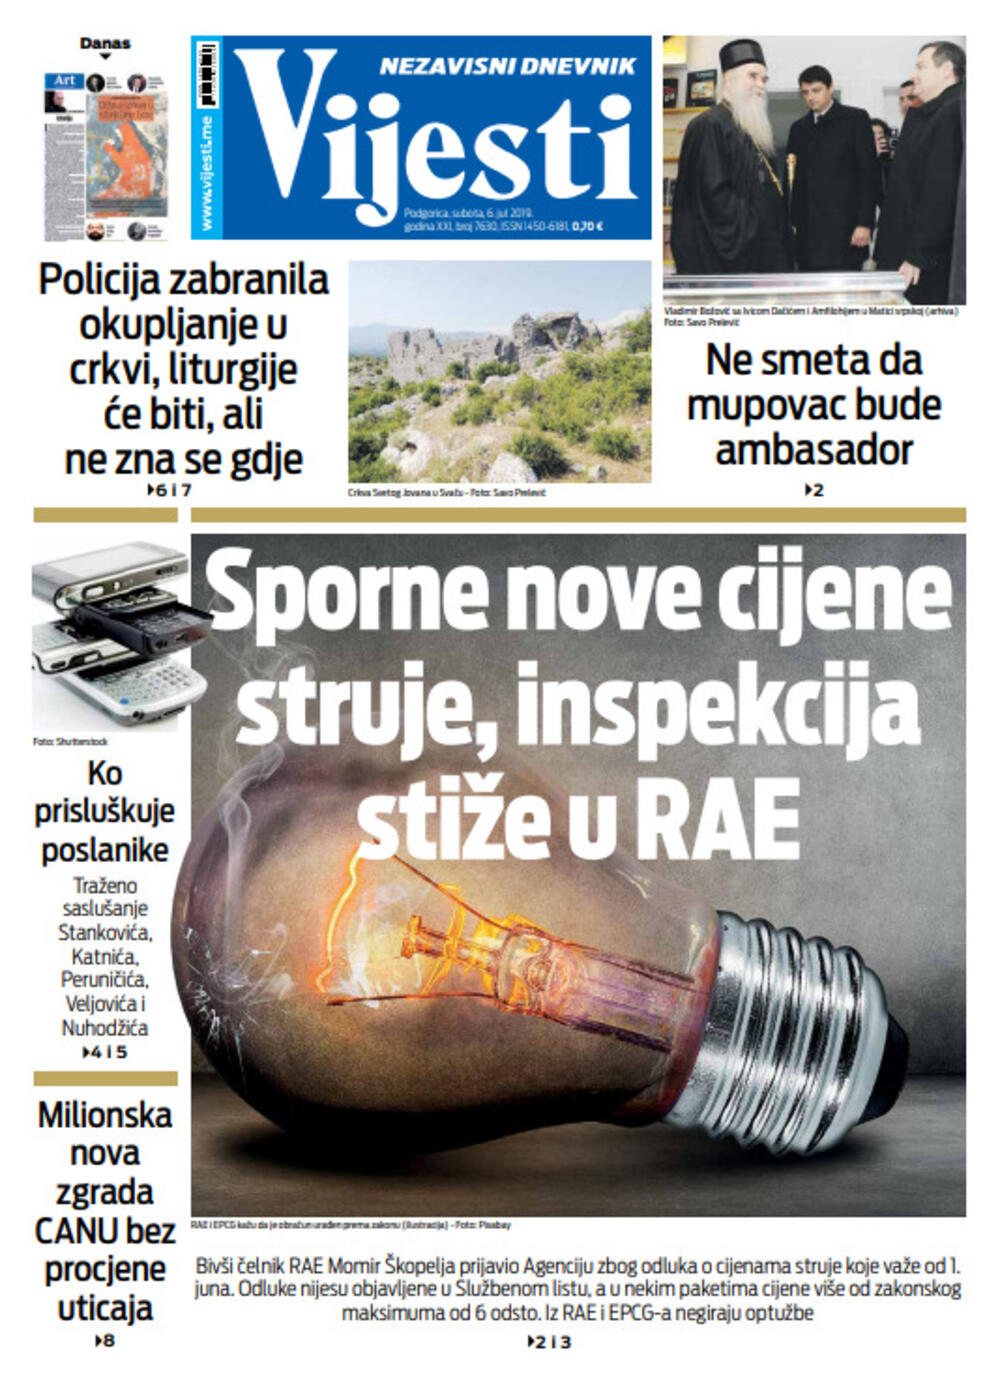 Naslovna strana "Vijesti" za šesti jul, Foto: "Vijesti"